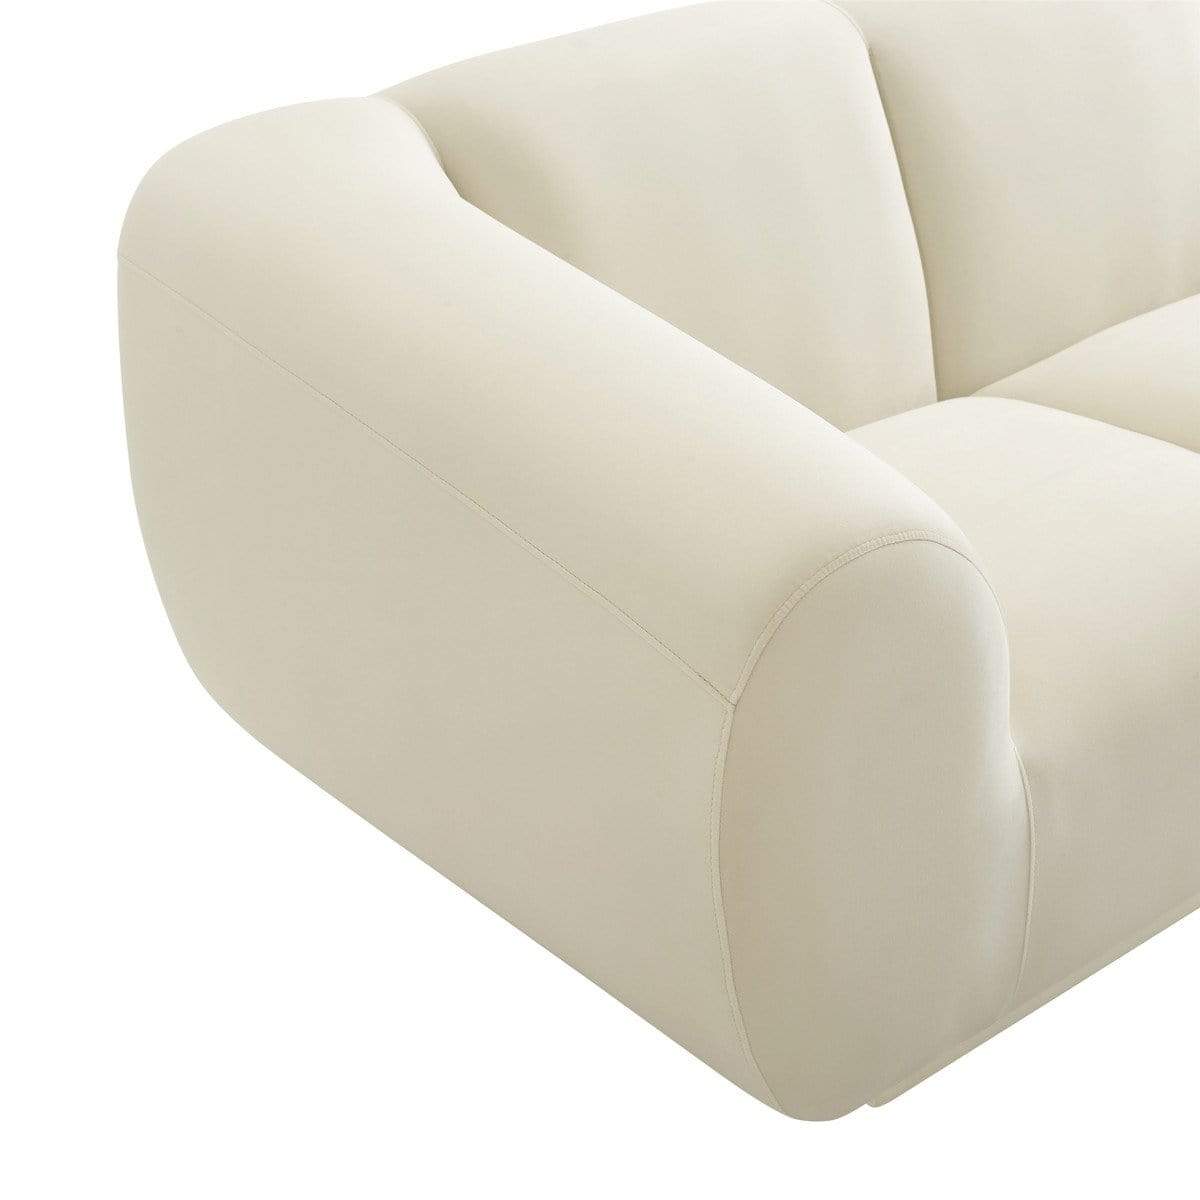 Candelabra Home Emmet Velvet Sofa - Cream Furniture TOV-S6445